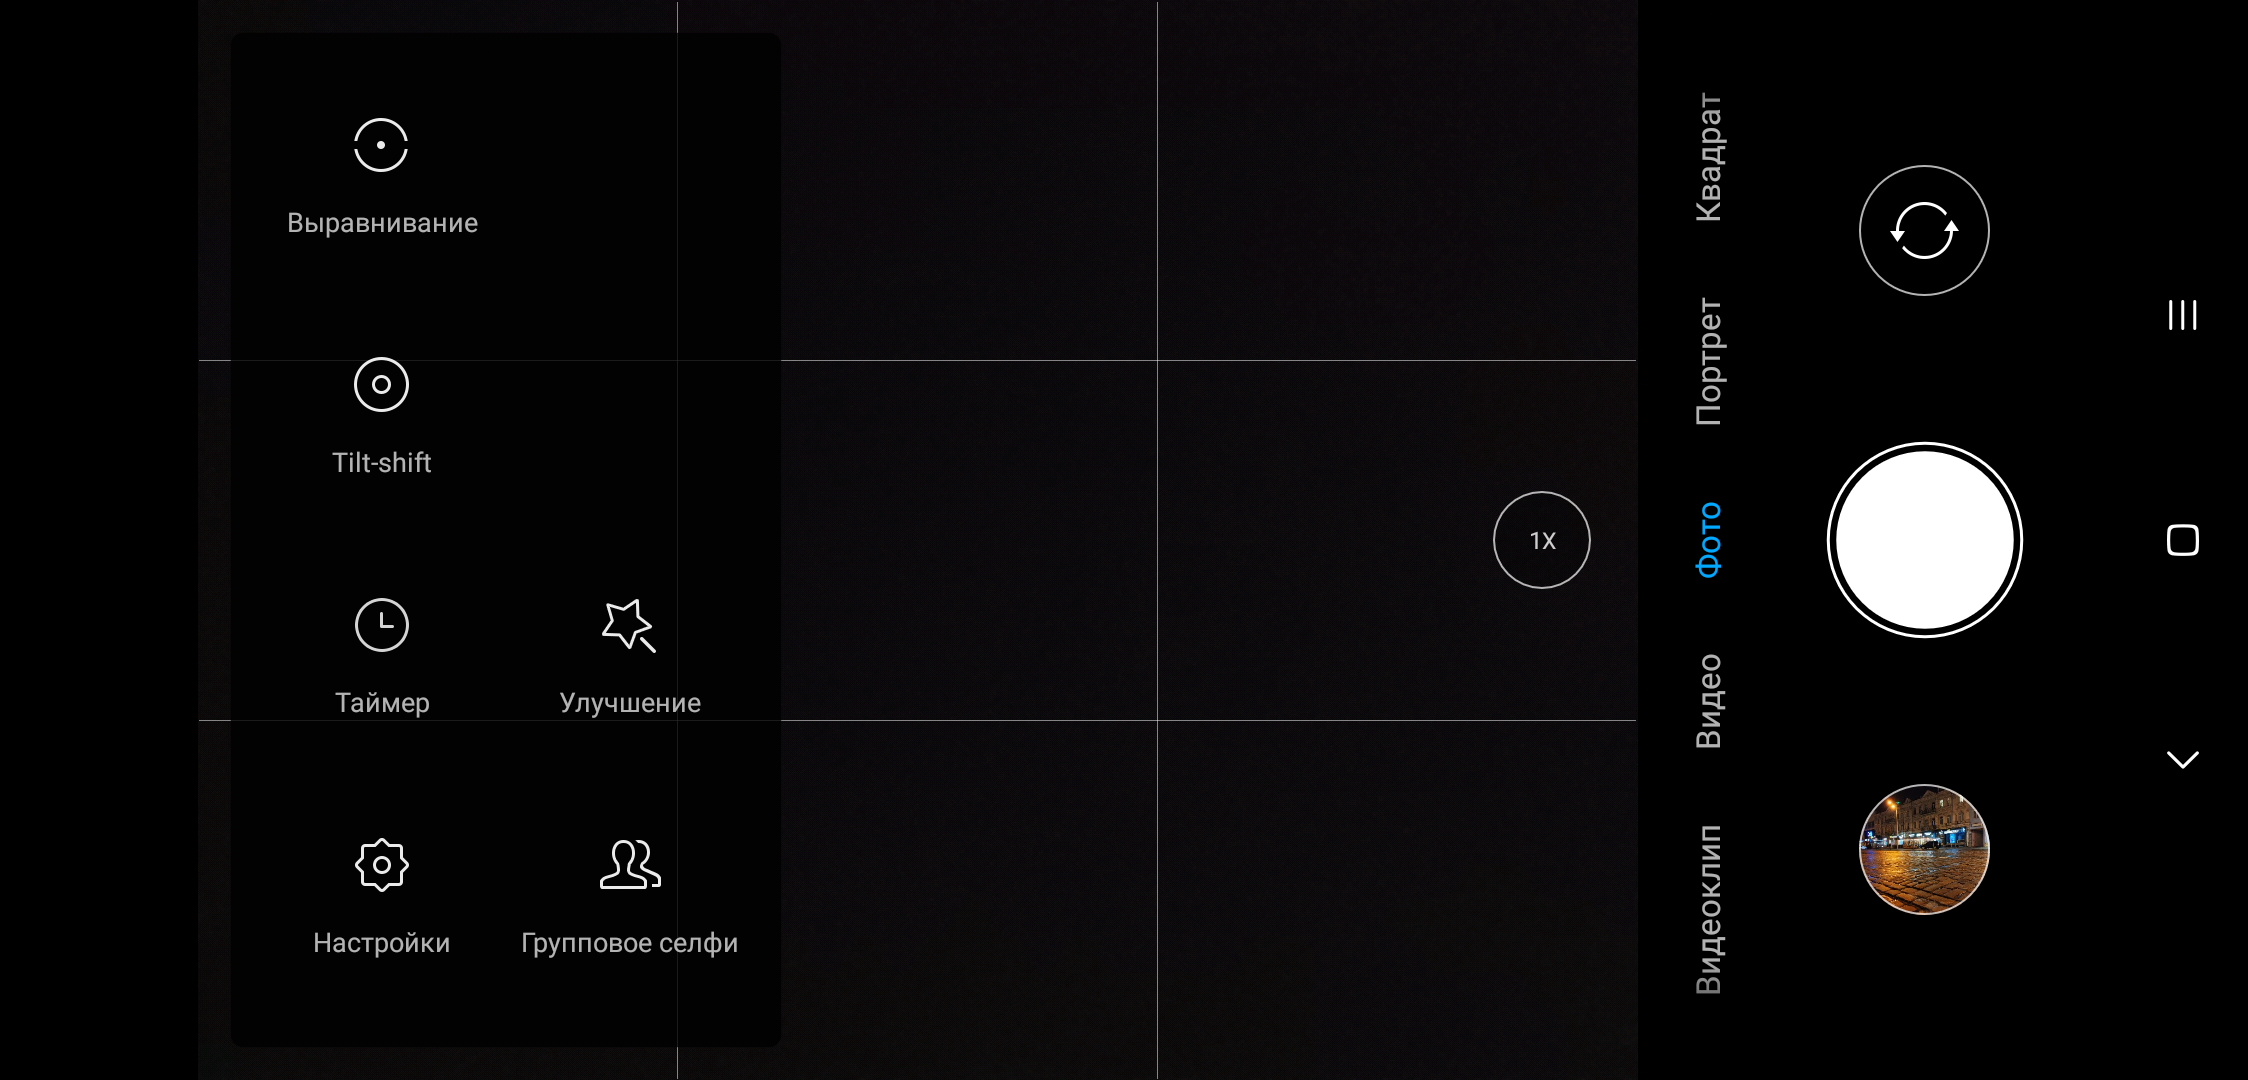 Обзор Xiaomi Mi 8: максимум мощности с приятным ценником-276